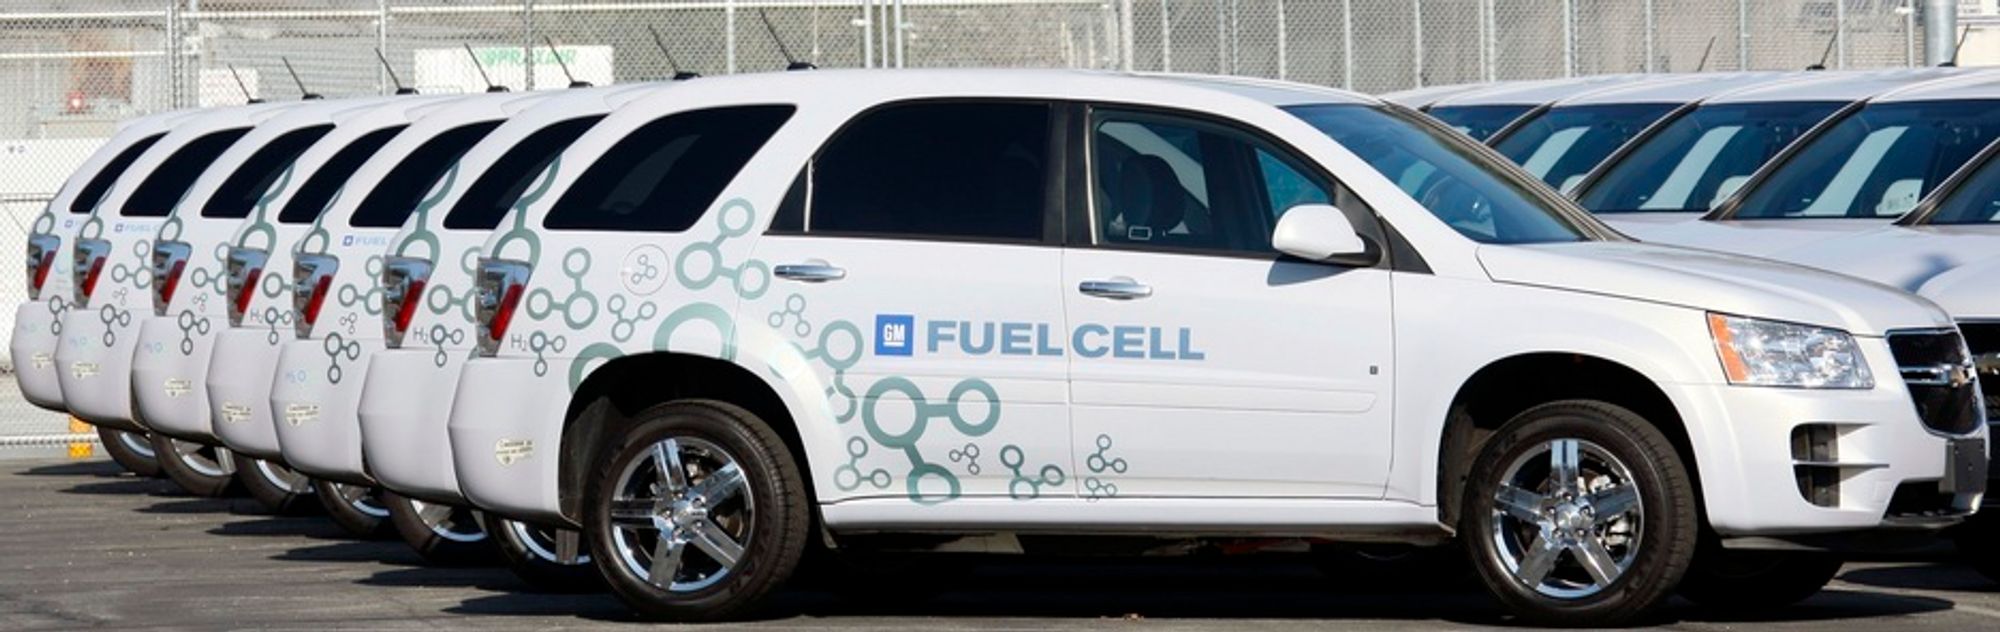 General Motors produserer i dag Chevrolet Equinox Fuel Cell. Men den er ikke til salgs på ordinær måte, den benyttes kun i demonstrasjonsprosjekter.